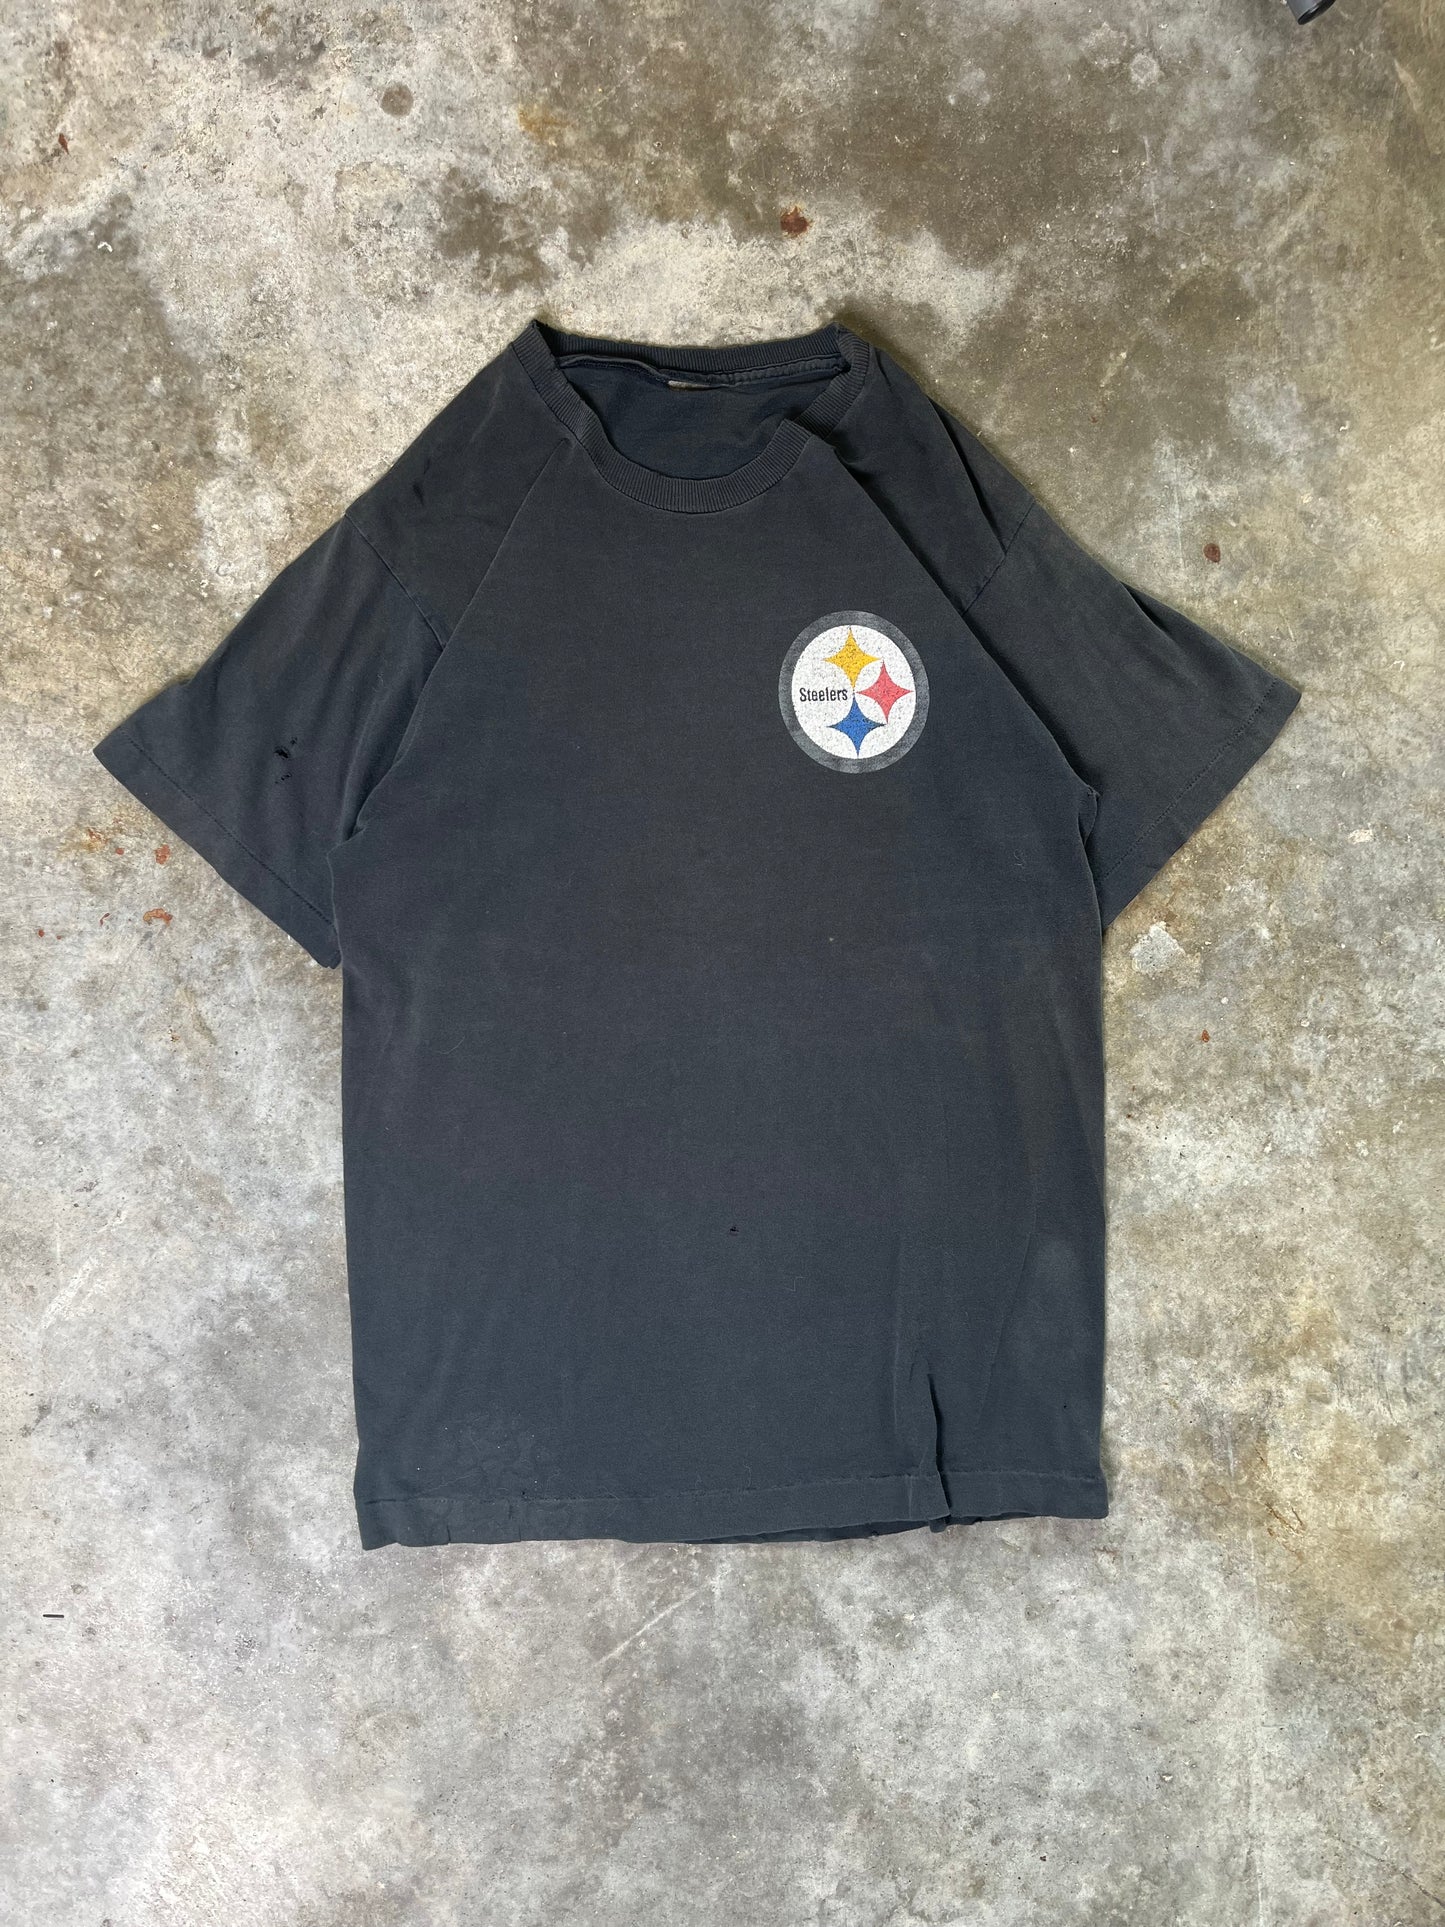 (L) 1997 Steelers Tee